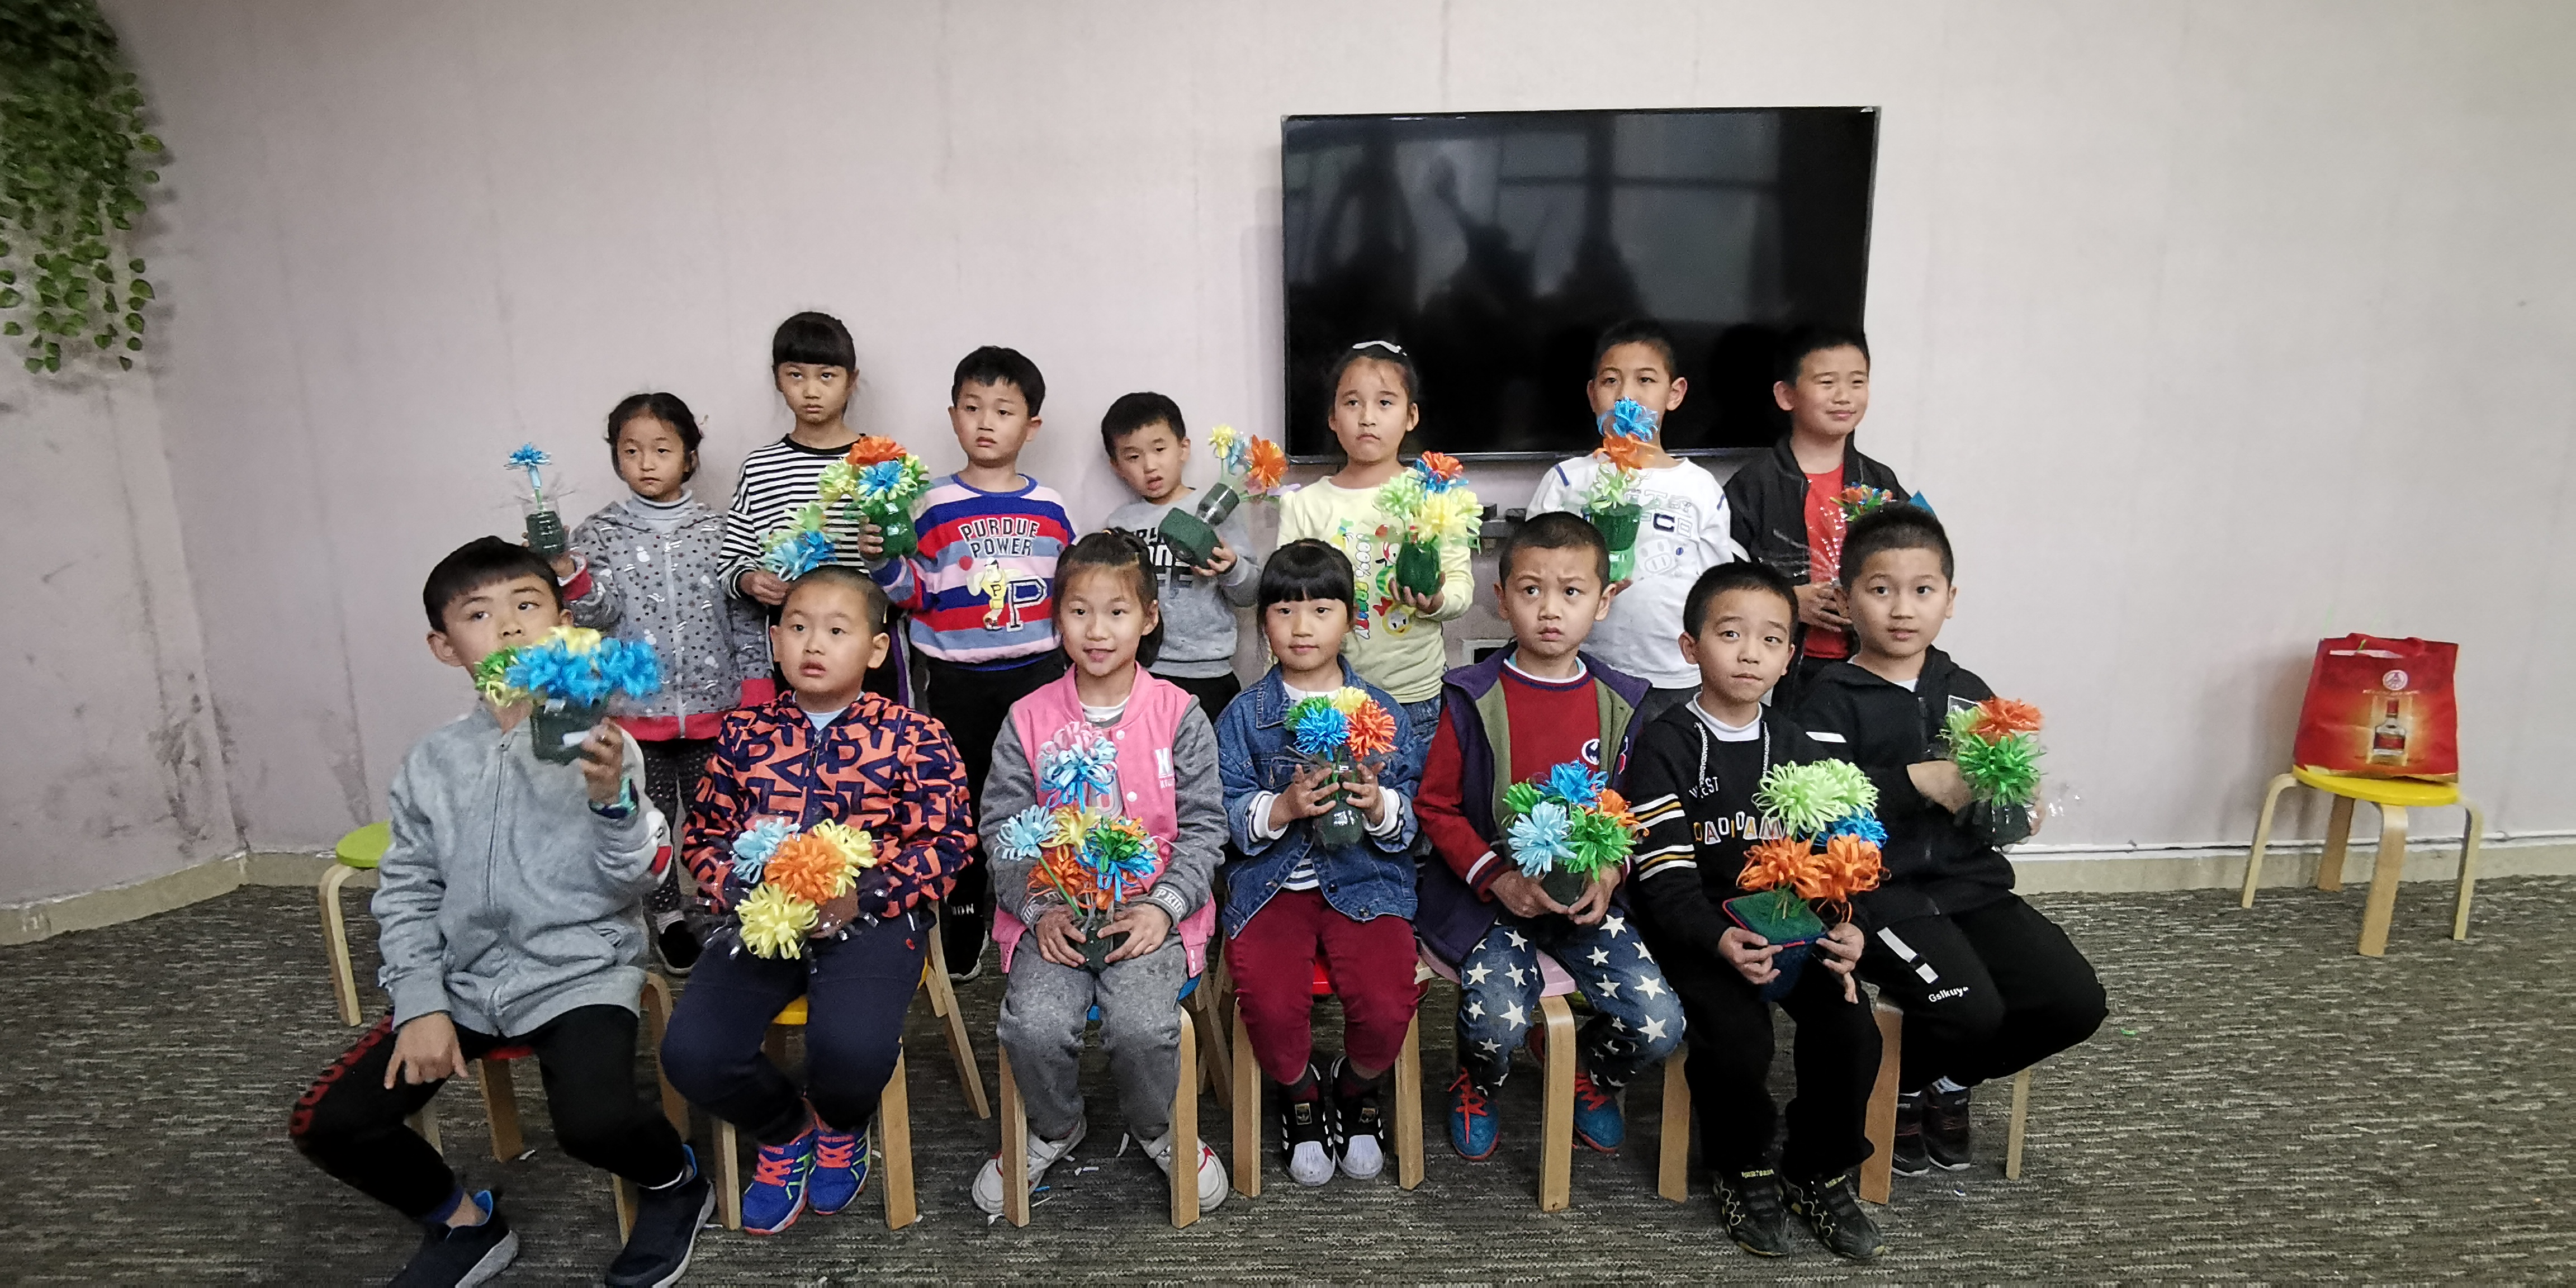 三明市博物馆举办清明节亲子手工插花活动